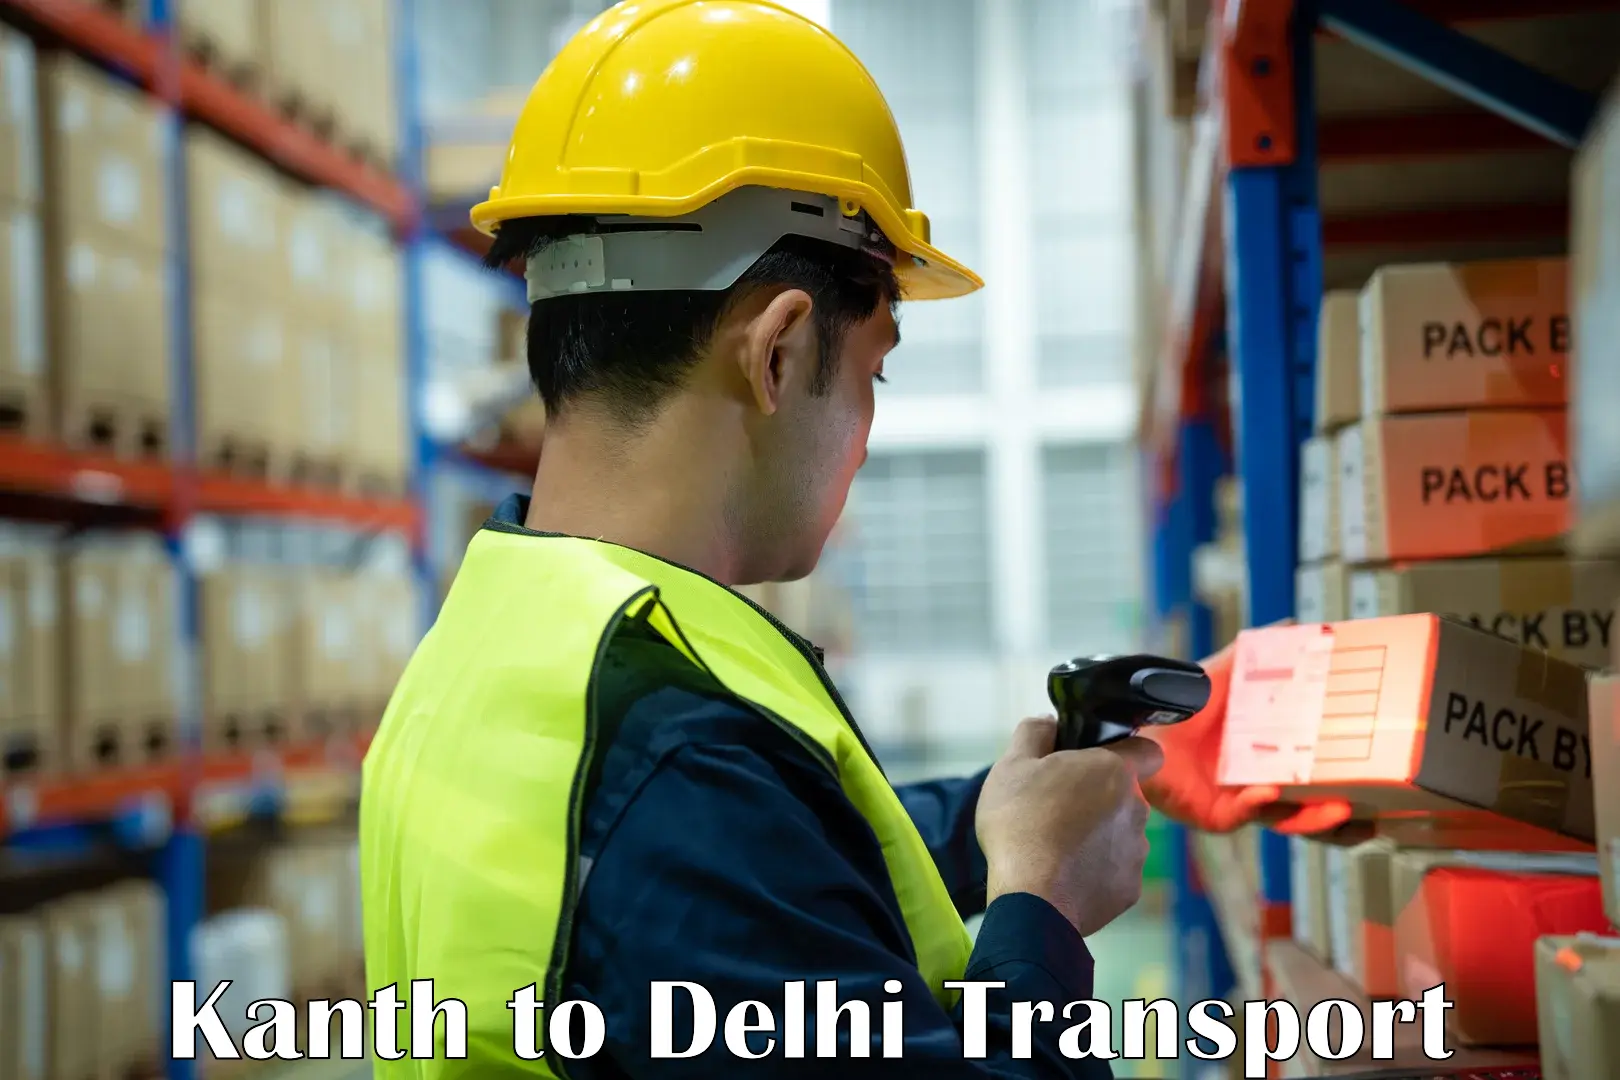 Logistics transportation services Kanth to Jamia Millia Islamia New Delhi